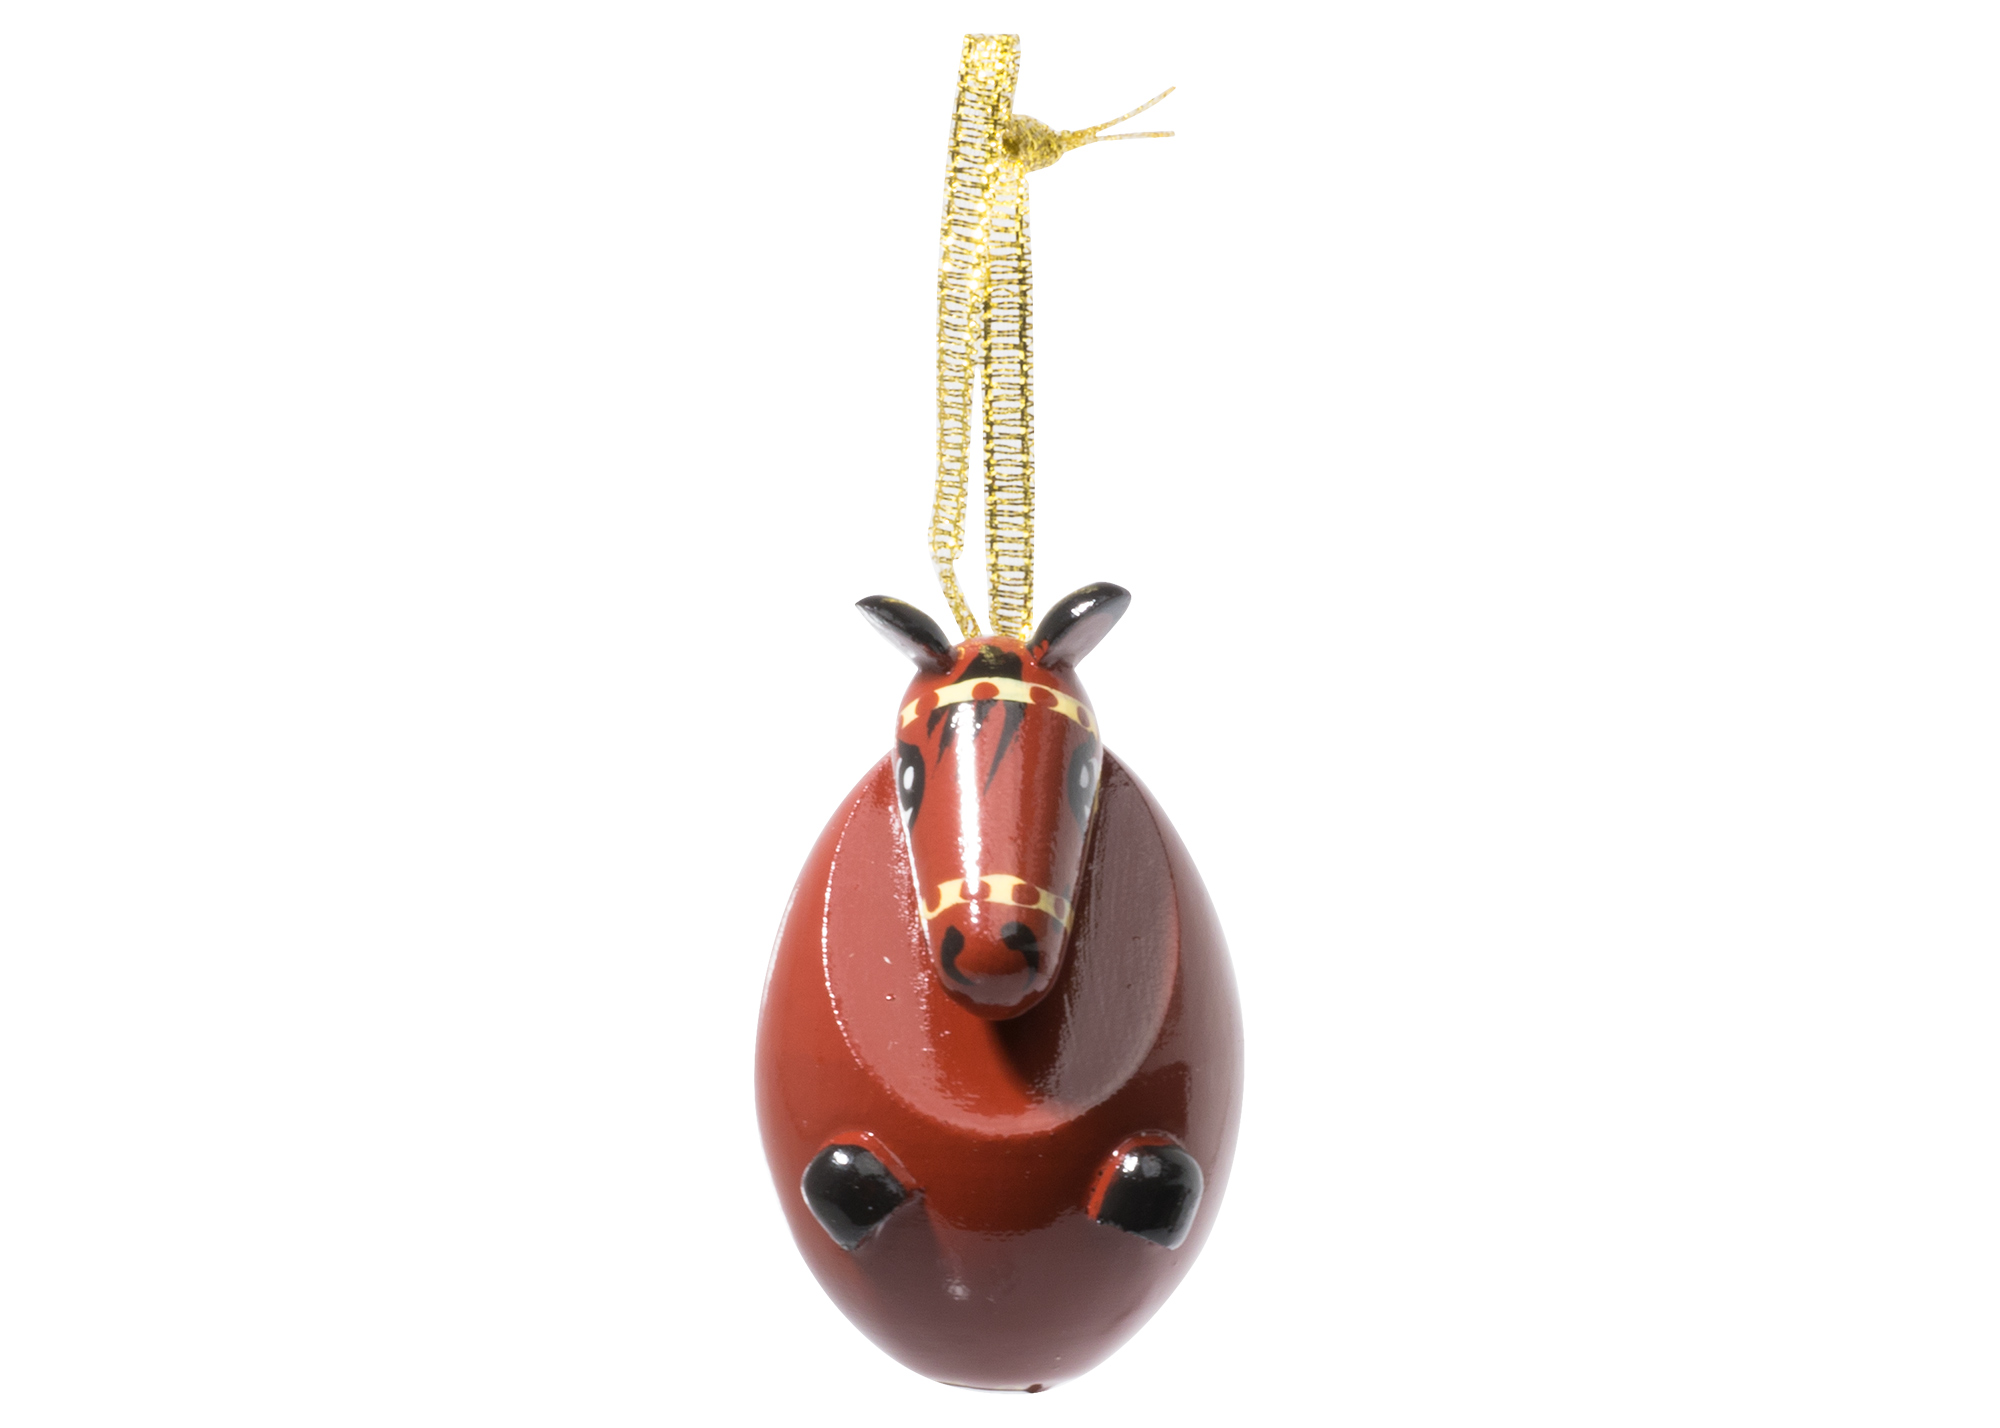 Buy Елочное украшение "Лошадь" 5 см at GoldenCockerel.com